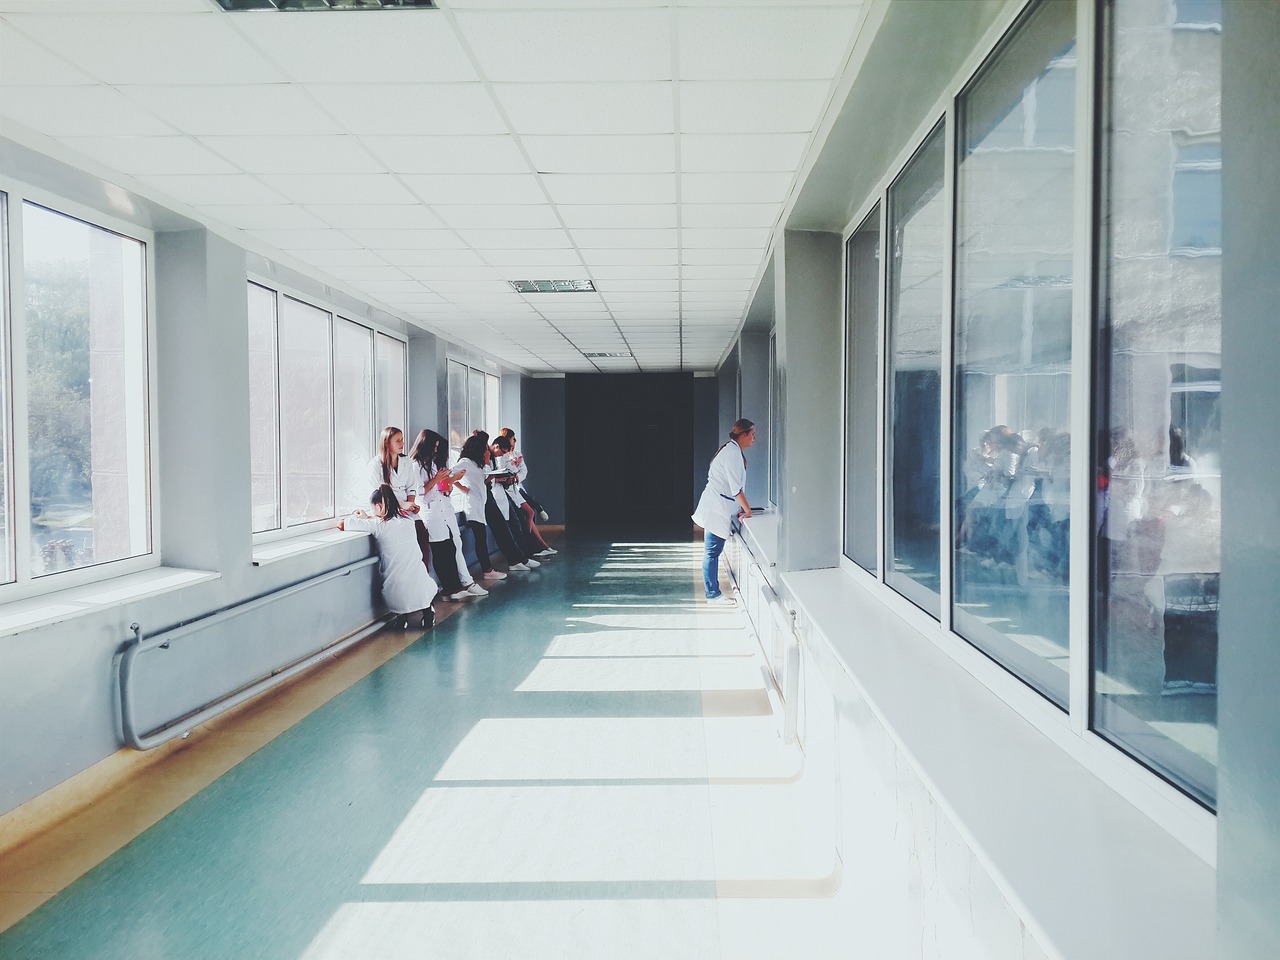 Rassismus im Gesundheitsbereich: Ein langer Gang in einem Krankenhaus, wo Gesundheitspersonal steht und Pause macht. Eine Frau sieht aus dem Fenster.